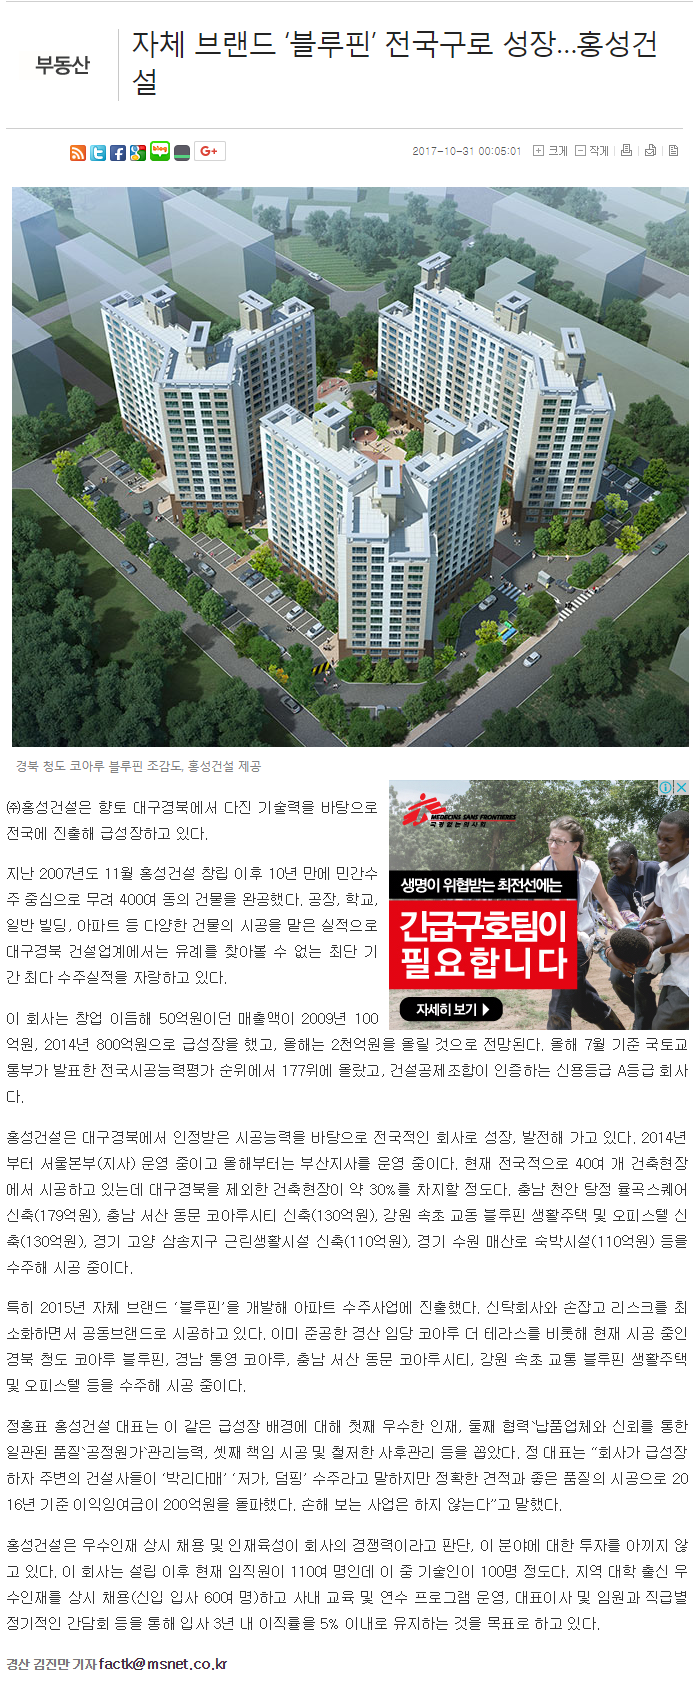 매일신문 17.10.31 자체브랜드 '블루핀' 전국구로 성장...홍성건설.png